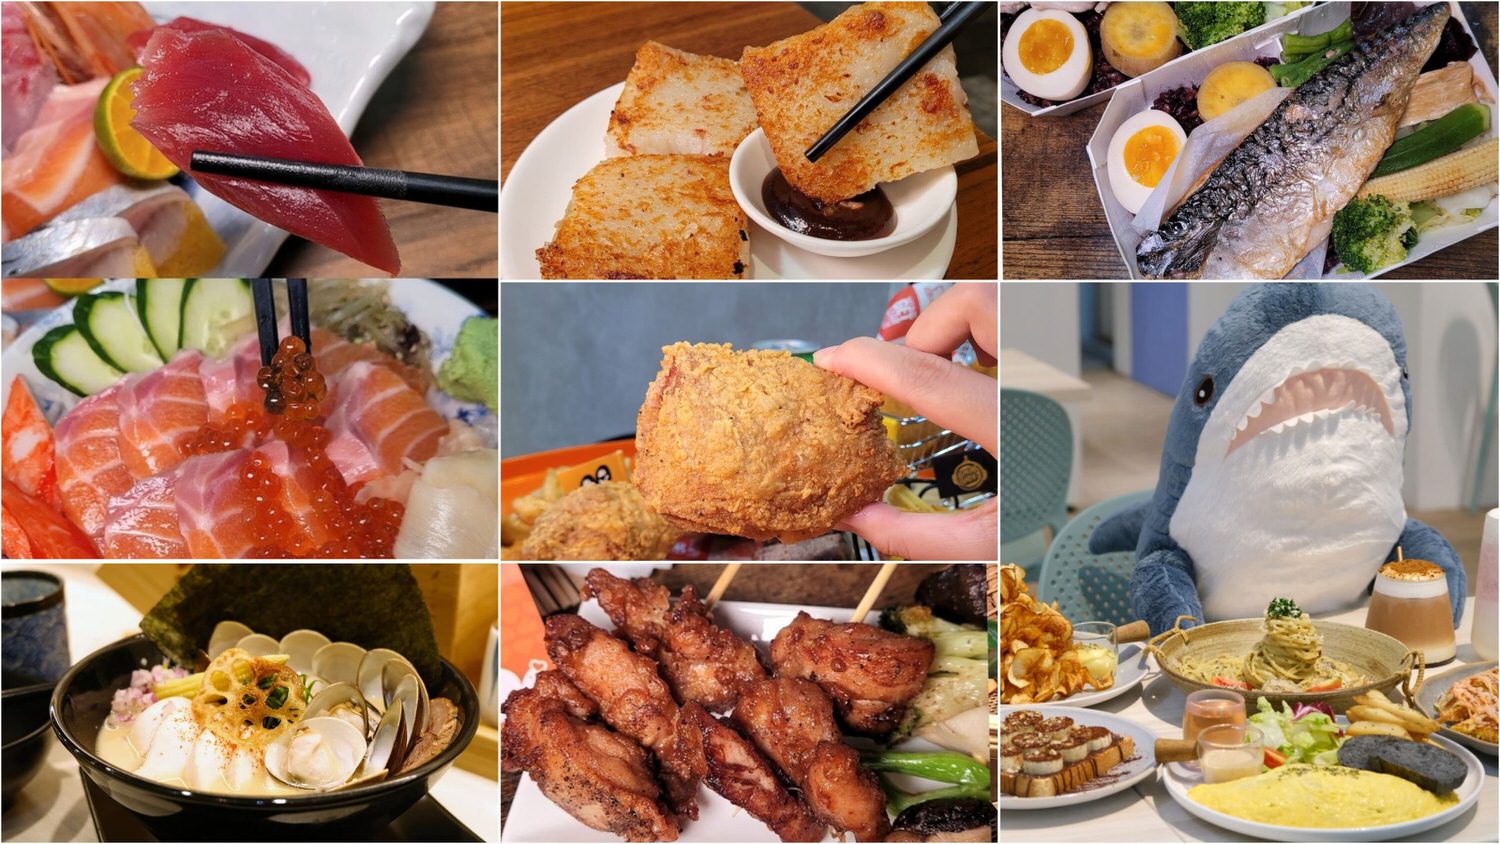 板橋美食餐廳推薦 精選10多家餐廳含早午餐、日料、泰式、炸雞及伴手禮美食懶人包